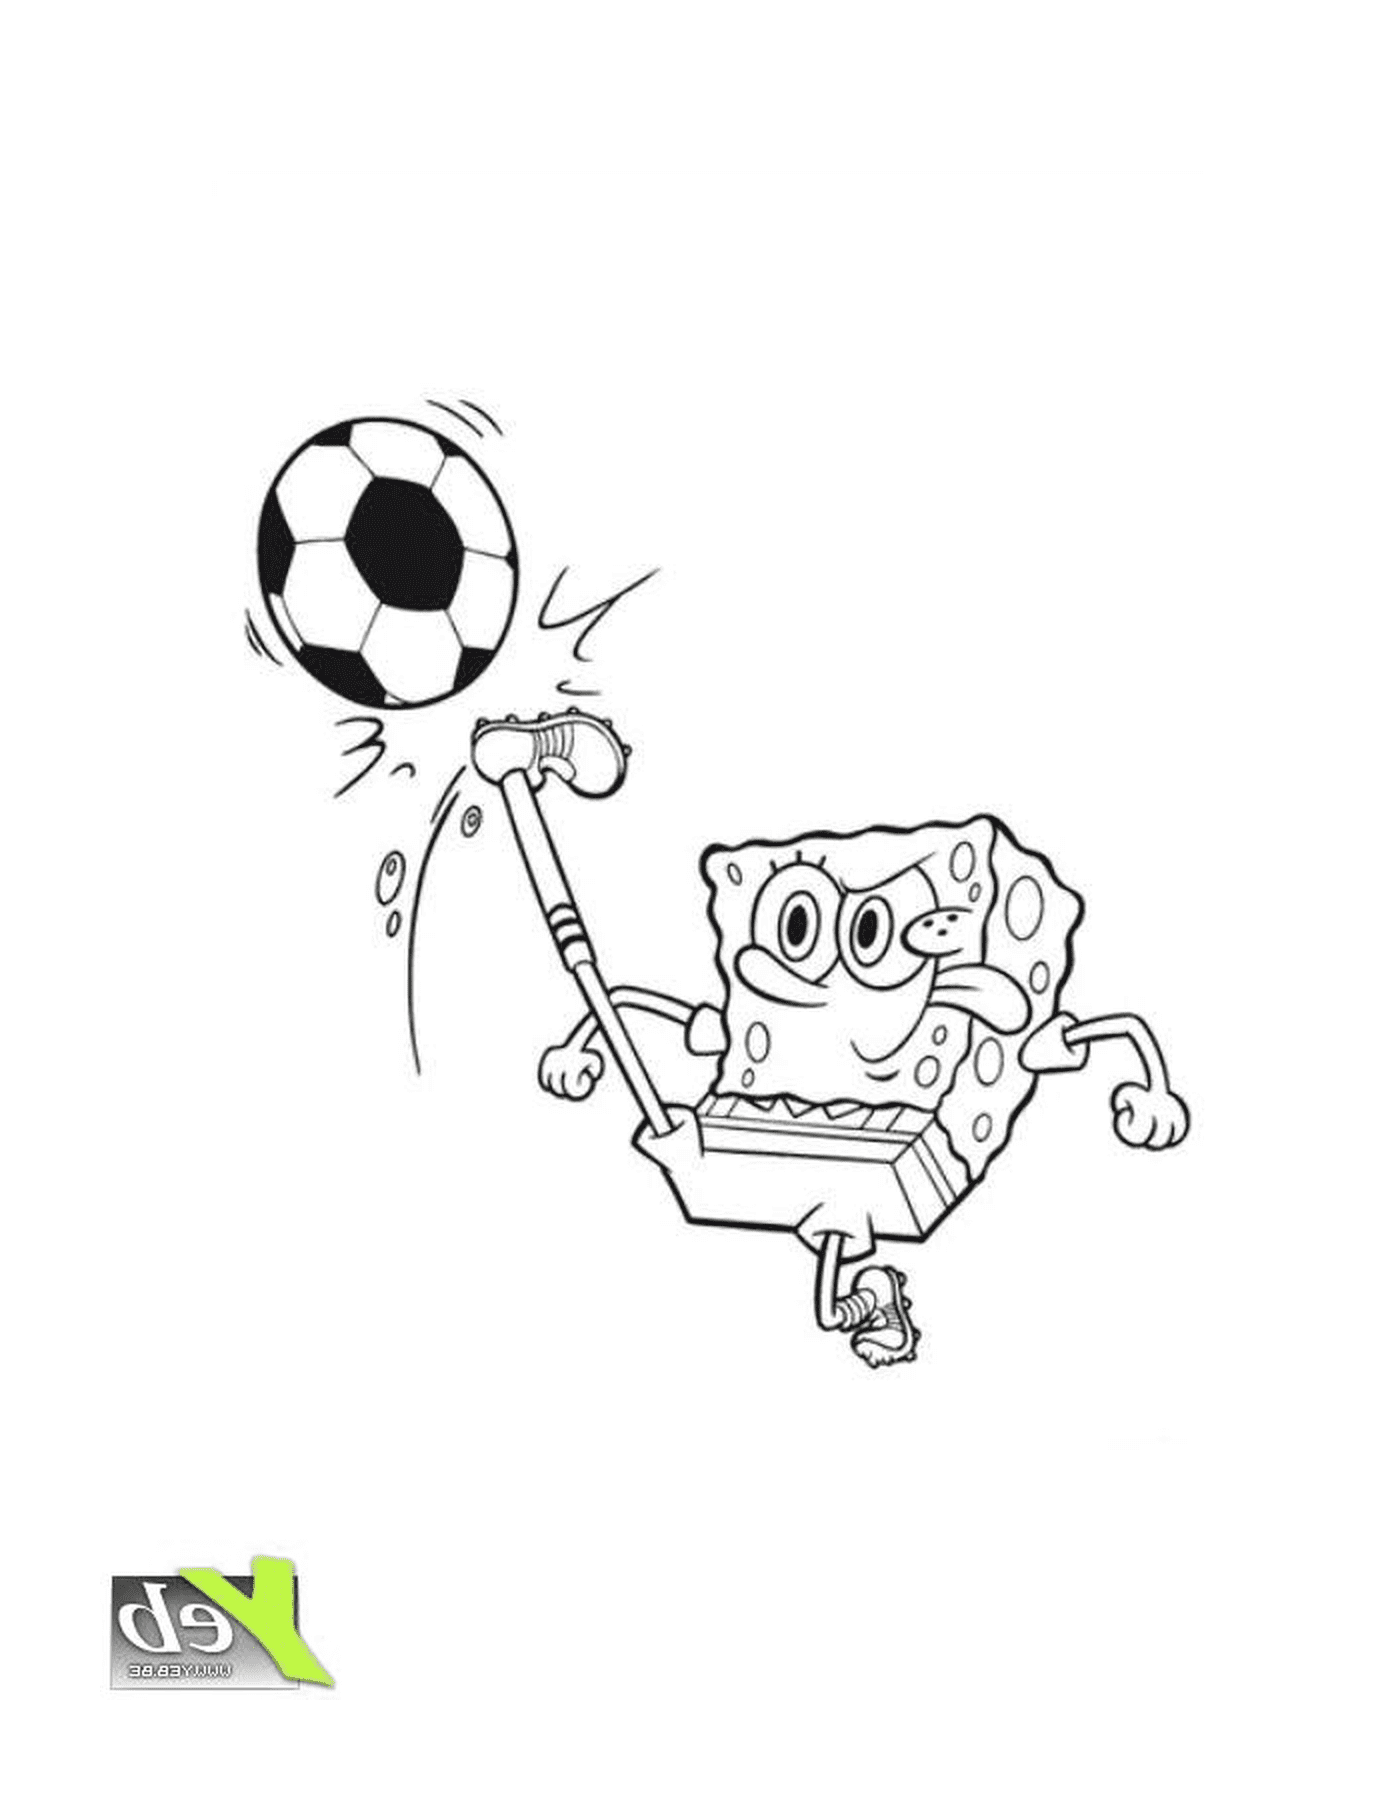  Bild von einem Sponge Bob, der Fußball spielt 